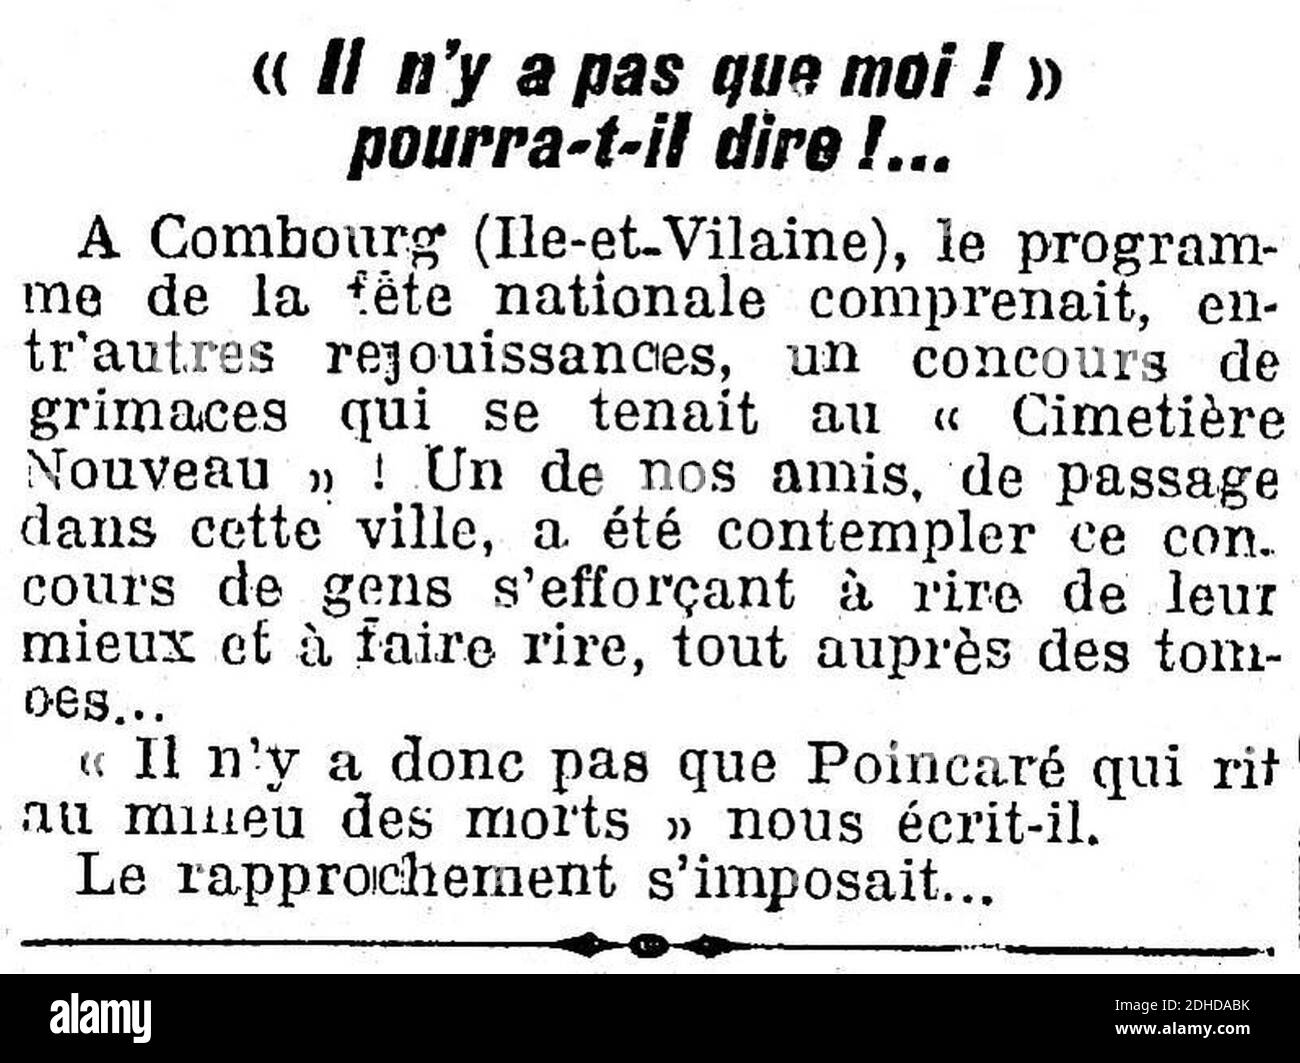 L'Humanité - 19 juillet 1922 - Seite 2 - 3ème colonne - Concours de grimaces à Combourg. Stockfoto